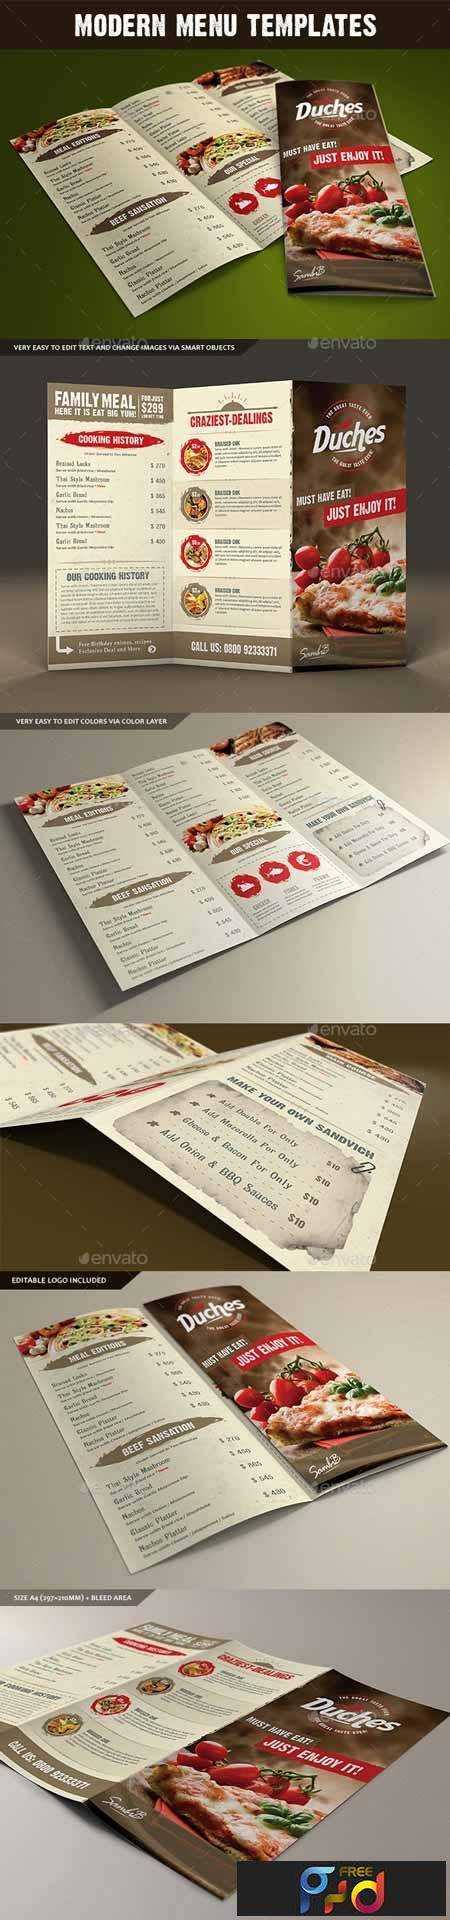 freepsdvn-com_1425840527_restaurant-menu-10448907